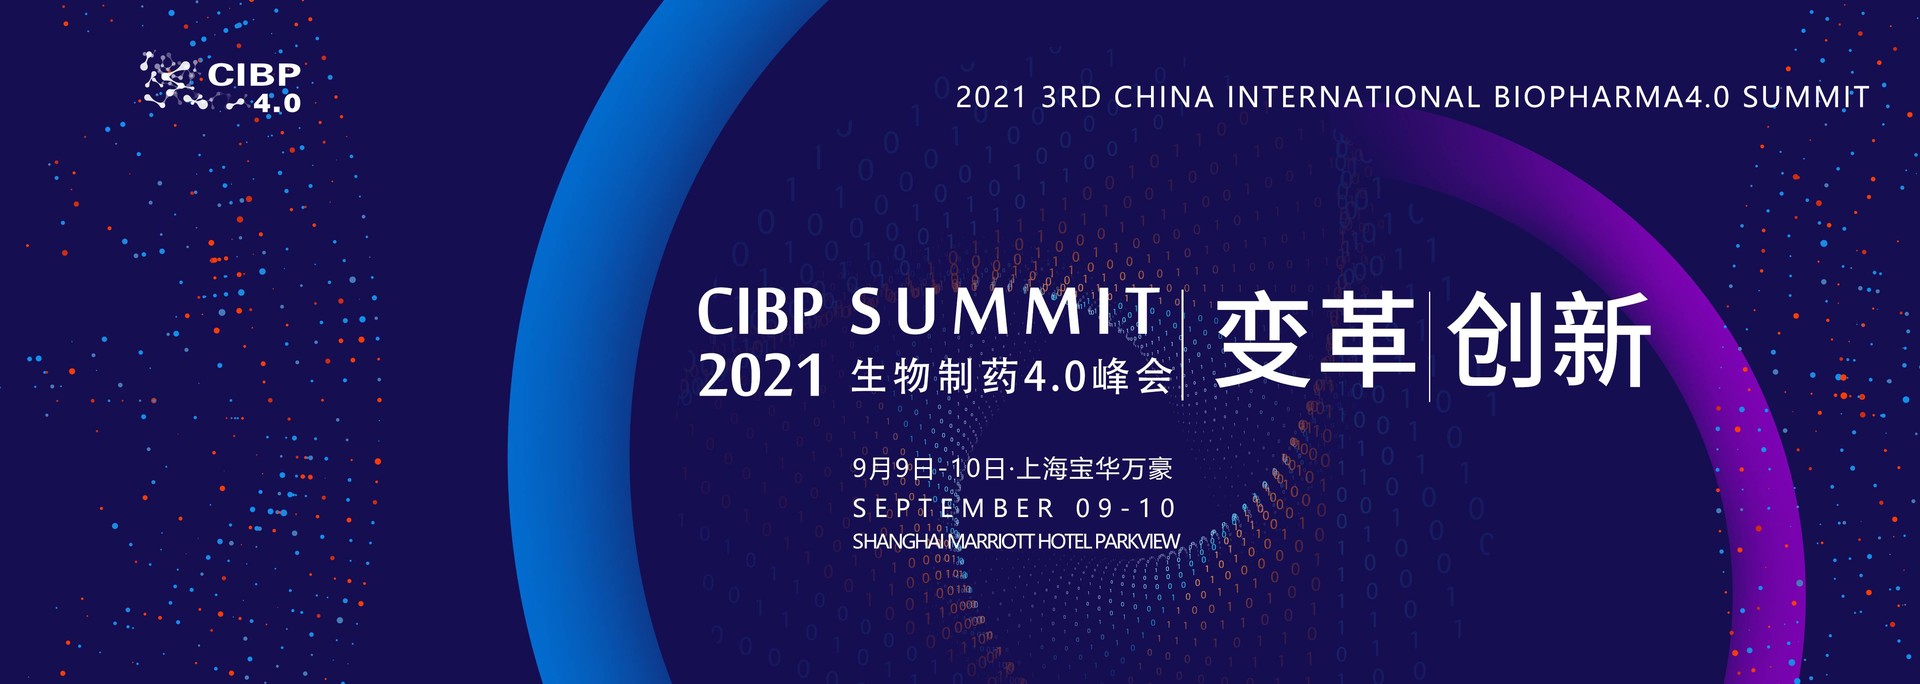 2021第三届中国国际生物制药4.0峰会